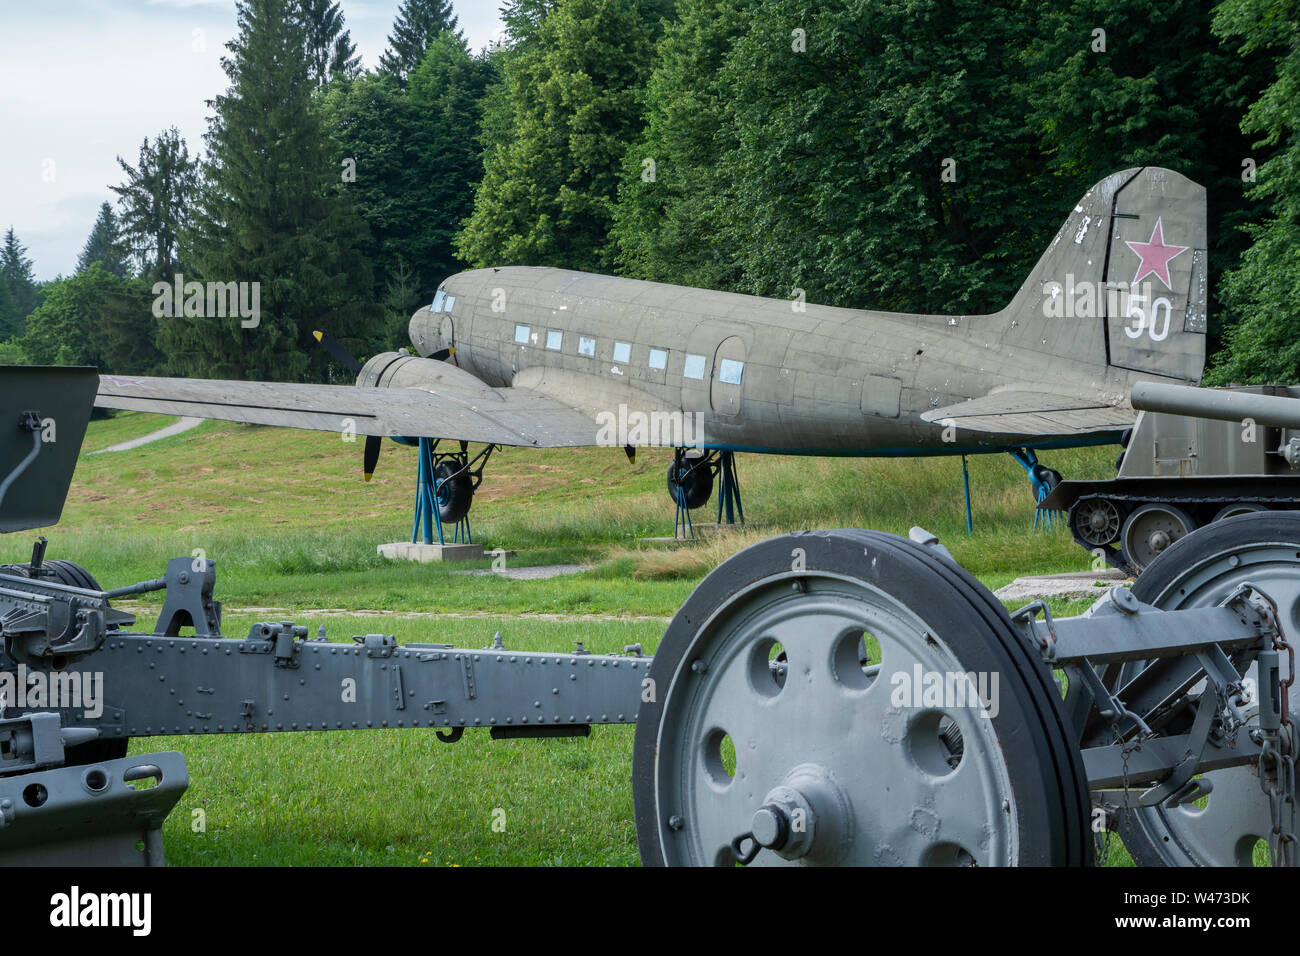 Musée militaire et historique en plein air à Svidnik. - Lisunov Li-2 (version russe du Dakota américain DC-3/C-47). Slovaquie, Europe Banque D'Images